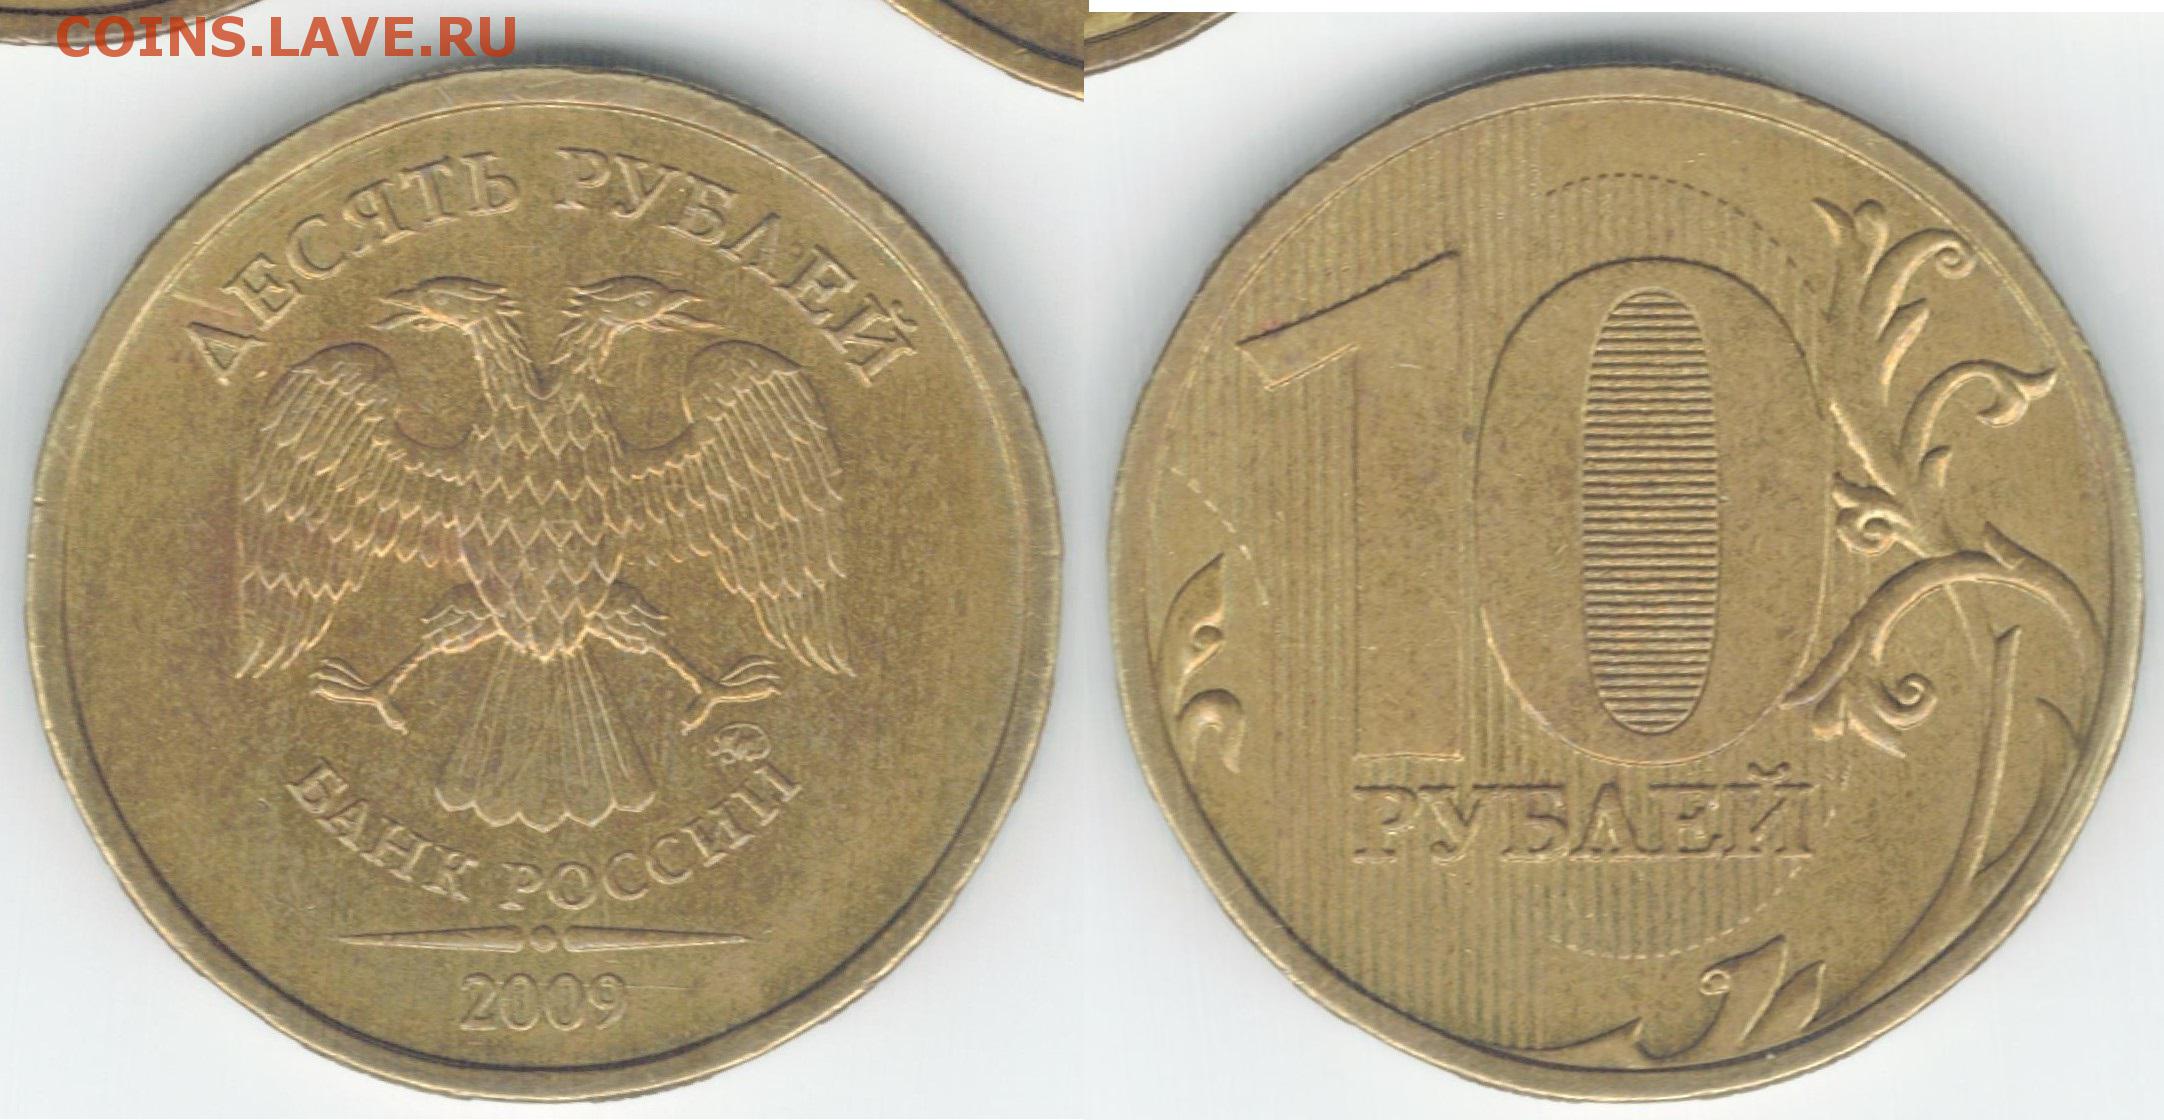 10рублевые монеты с орлами юбилейные